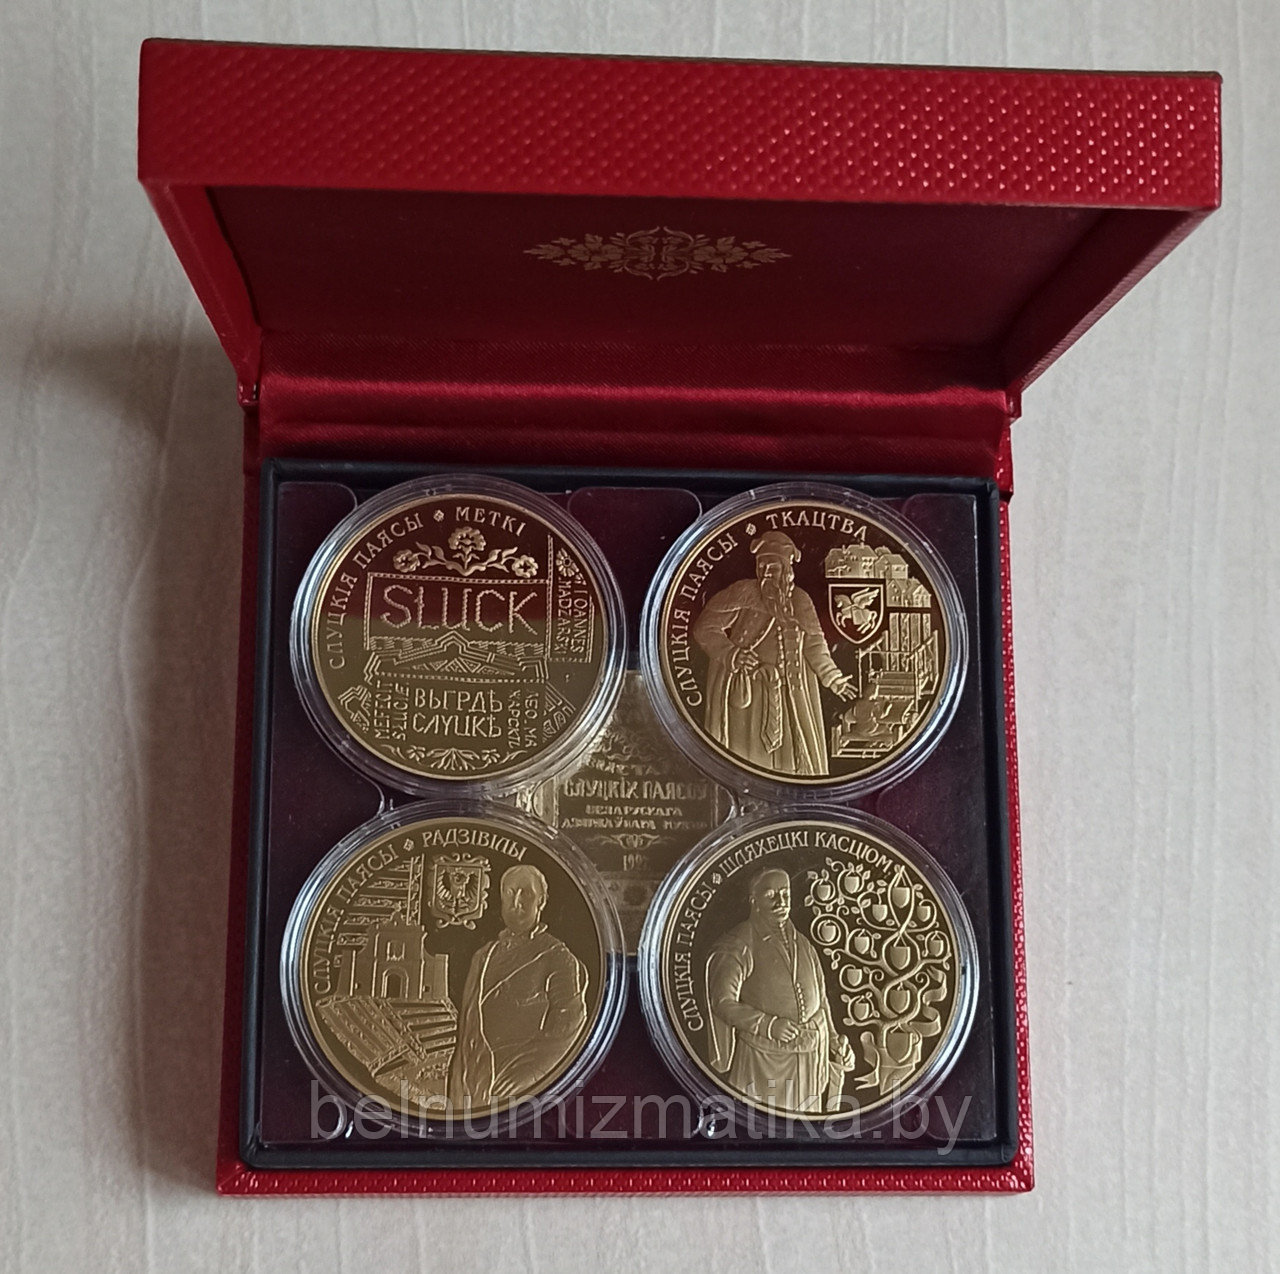 Слуцкие пояса 1 рубль 2013 Комплект монет "Слуцкiя паясы", Slutsk belts,  позолота, футляр №1